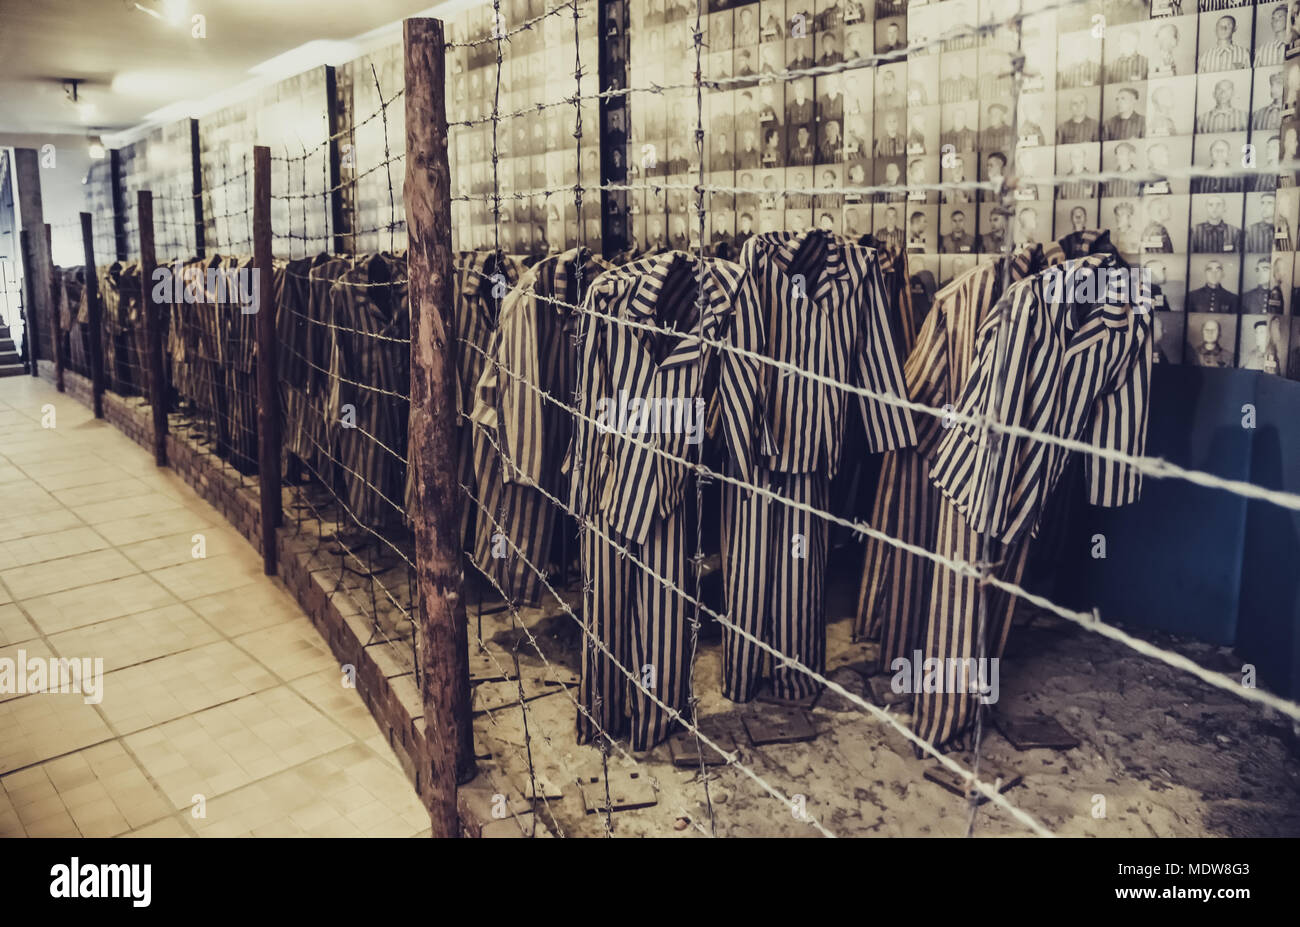 Oswiecim/Polen - 02.15.2018: Museum Auschwitz Ausstellung mit Kleidung der Gefangenen mit Streifen hinter einem Stacheldrahtzaun. Stockfoto